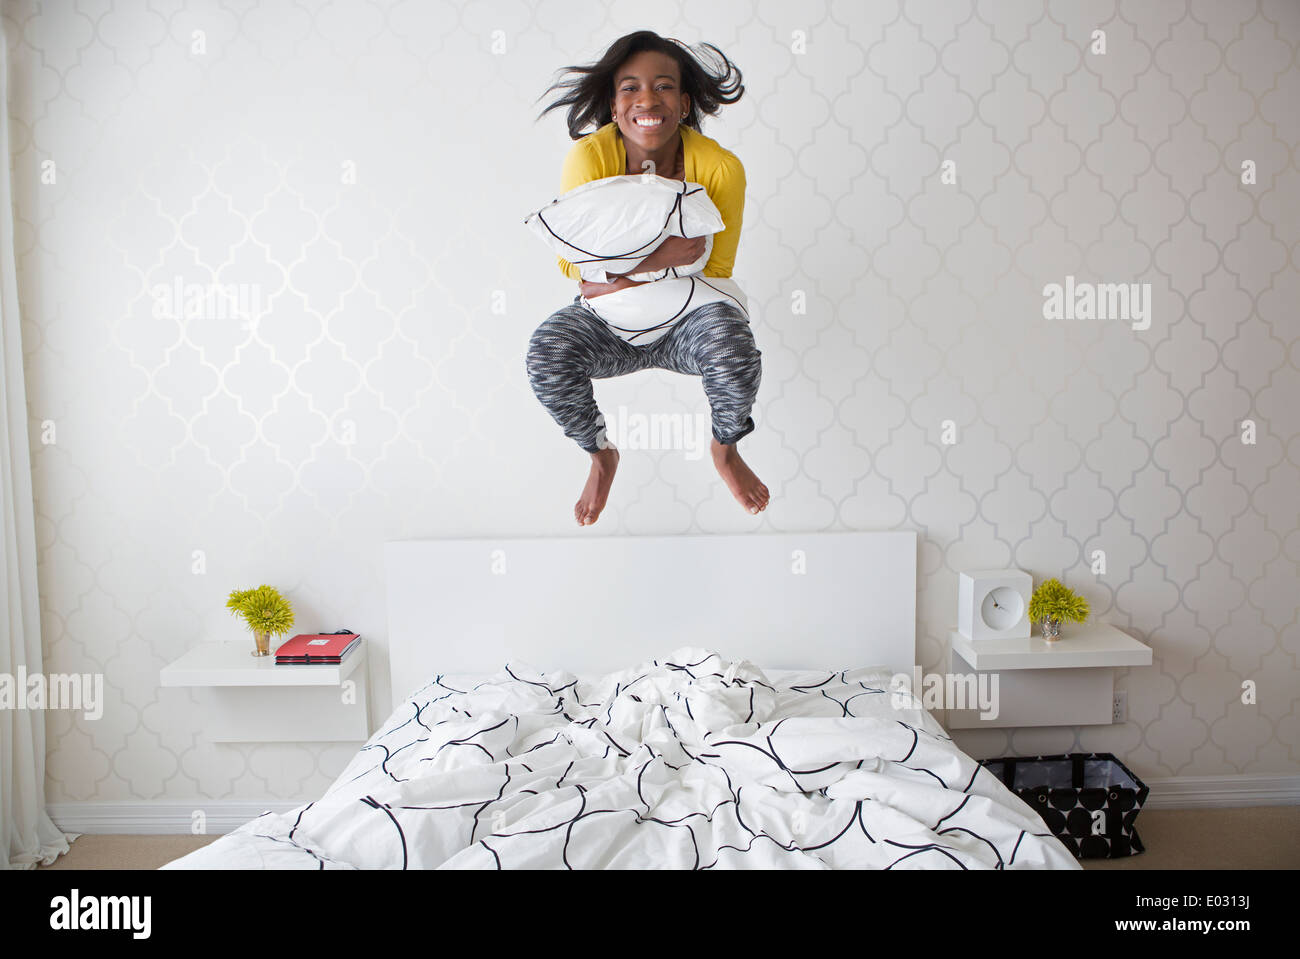 Ein junges Mädchen springen hoch in der Luft über dem Bett. Stockfoto